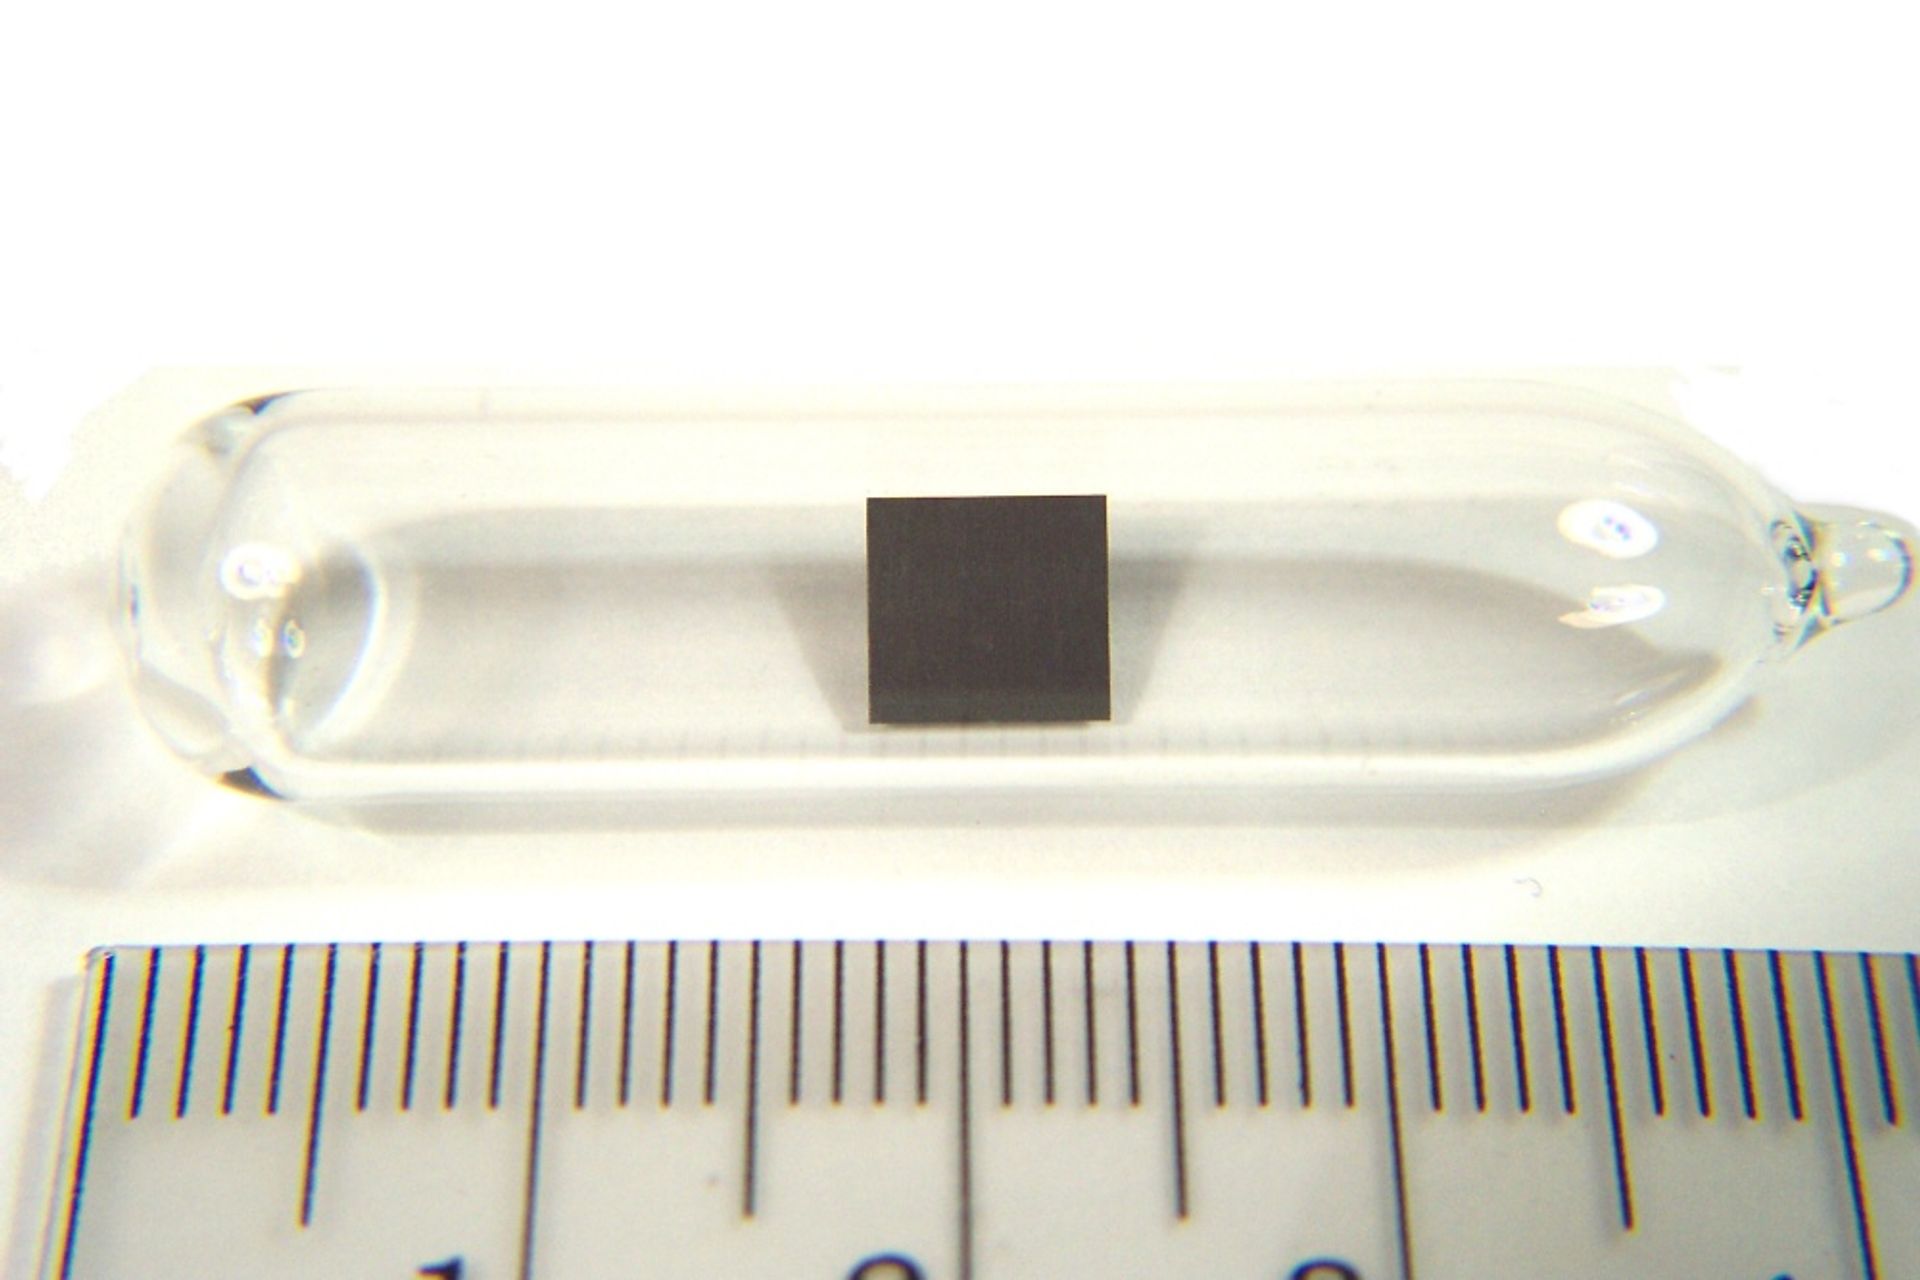 Tórium minta vékony lap formájában argon alatt, üvegampullában